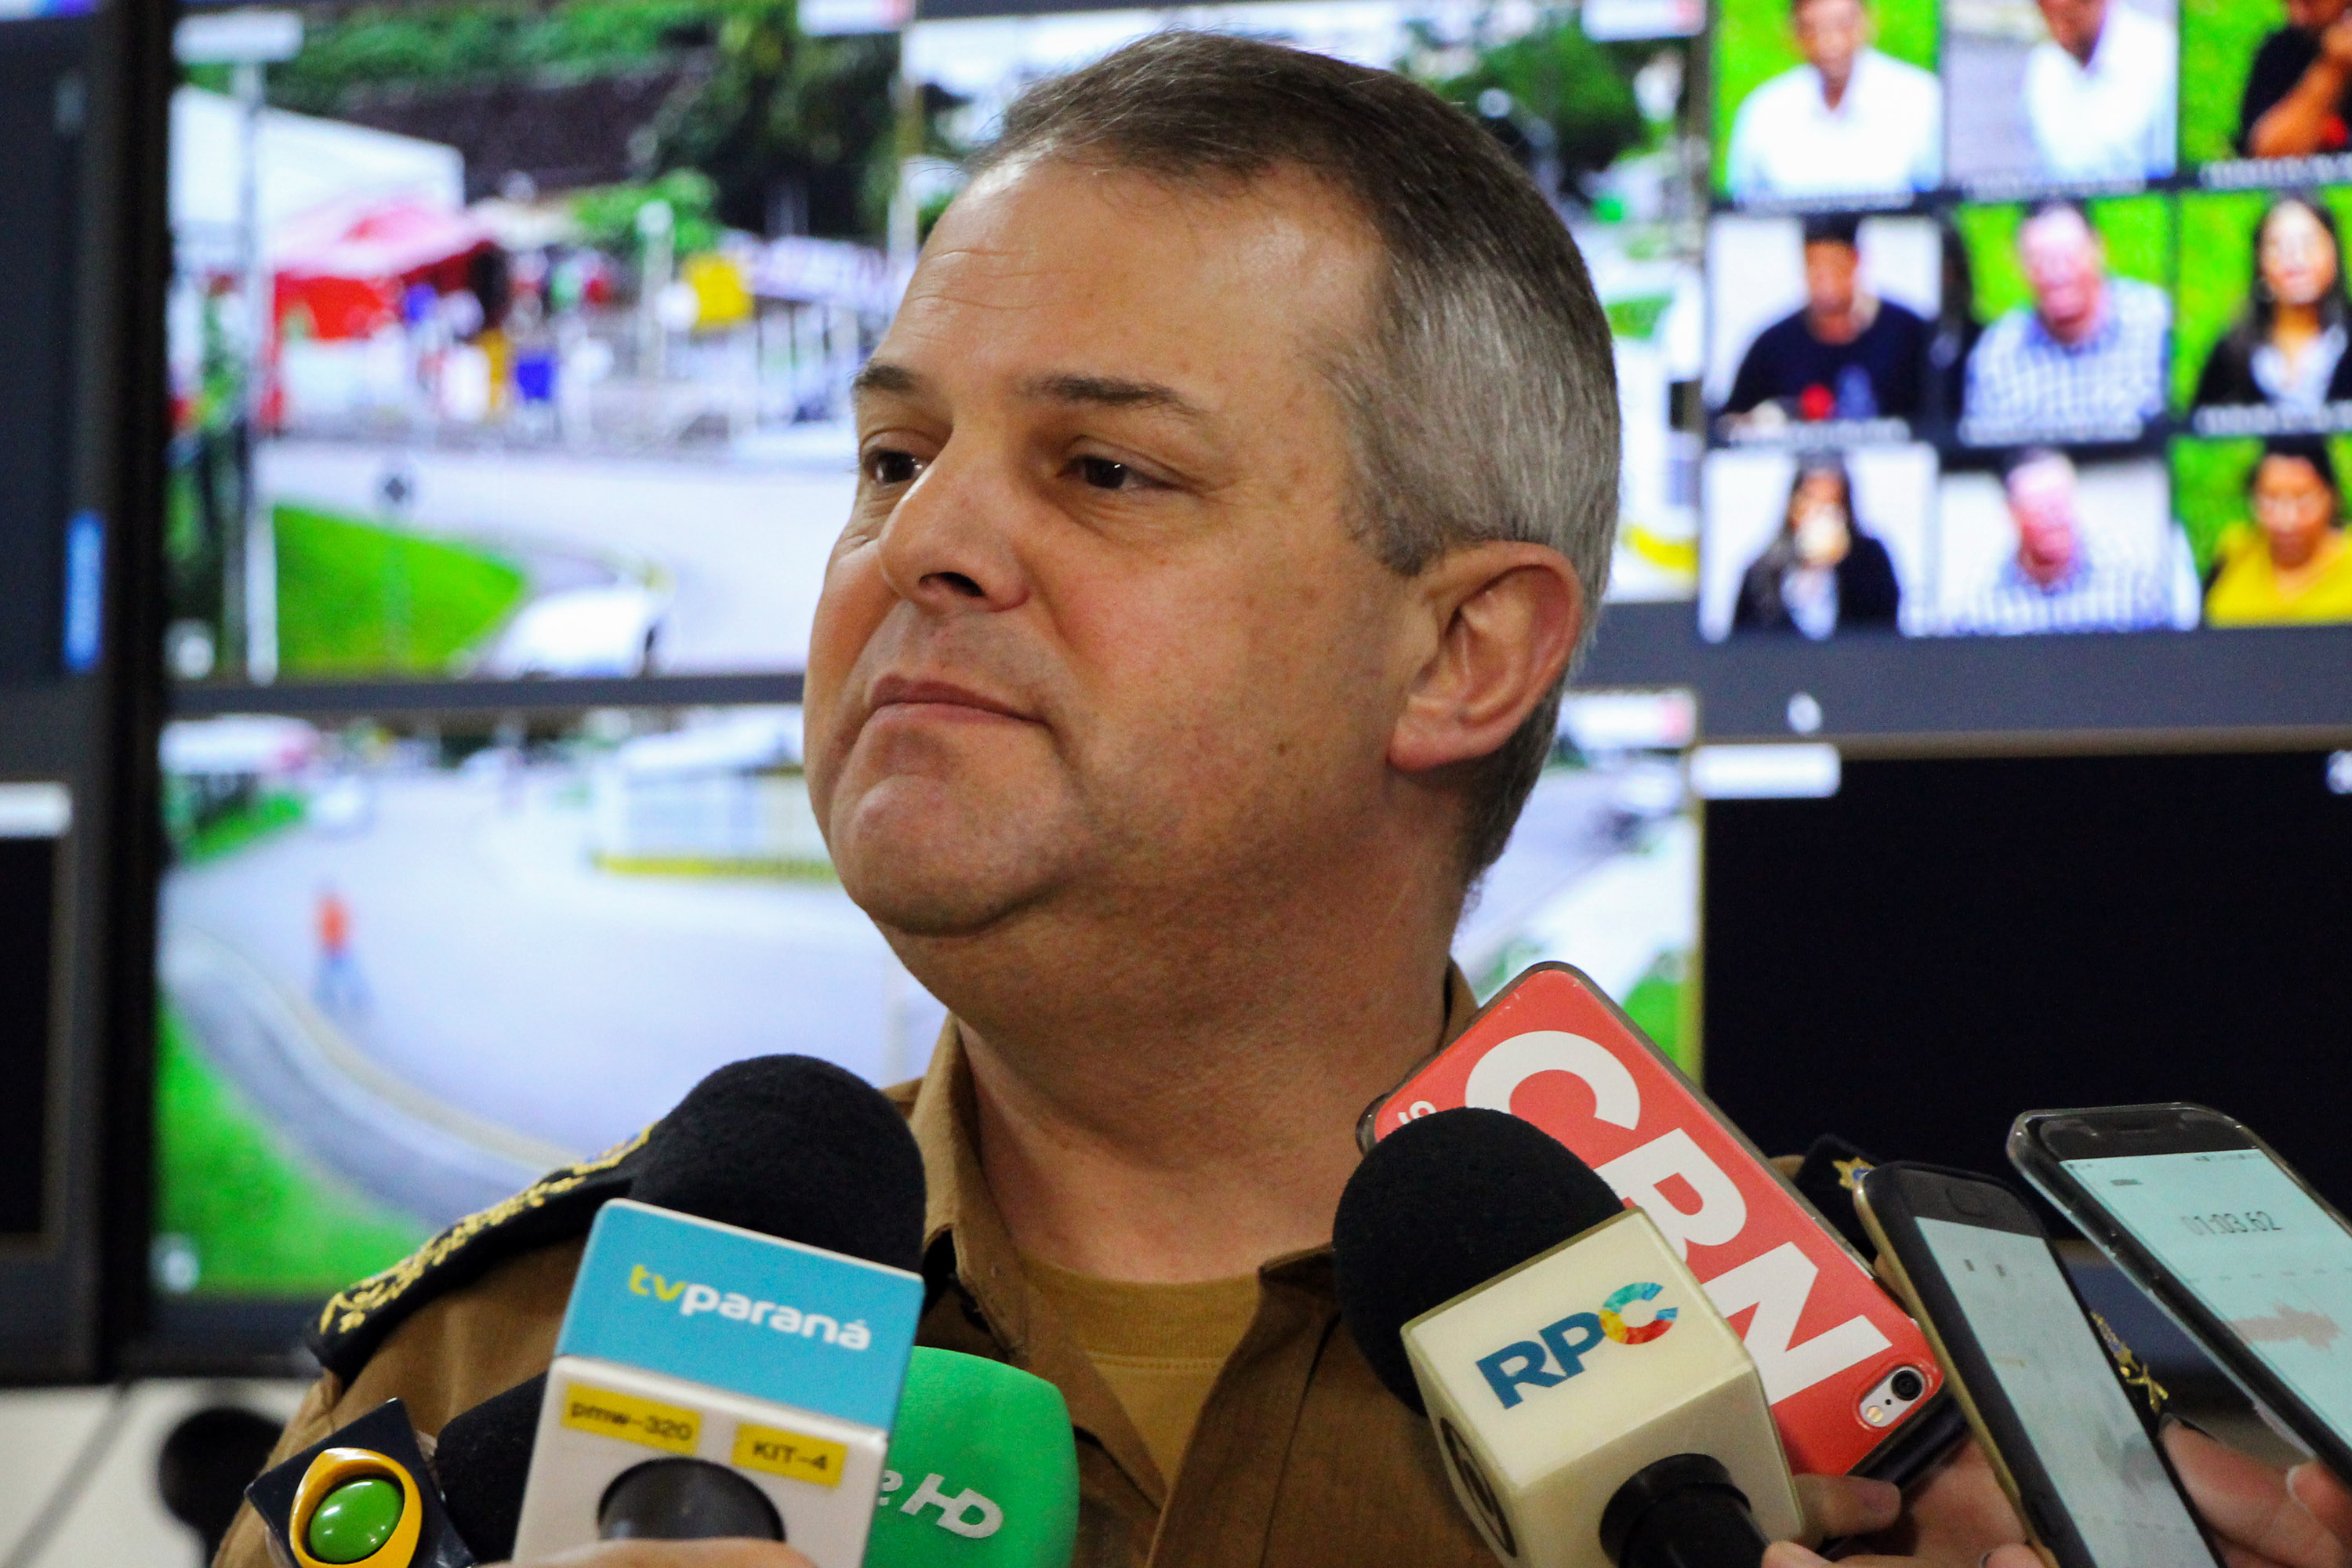  Esquema de segurança na eleição prevê atenção especial na região da Polícia Federal